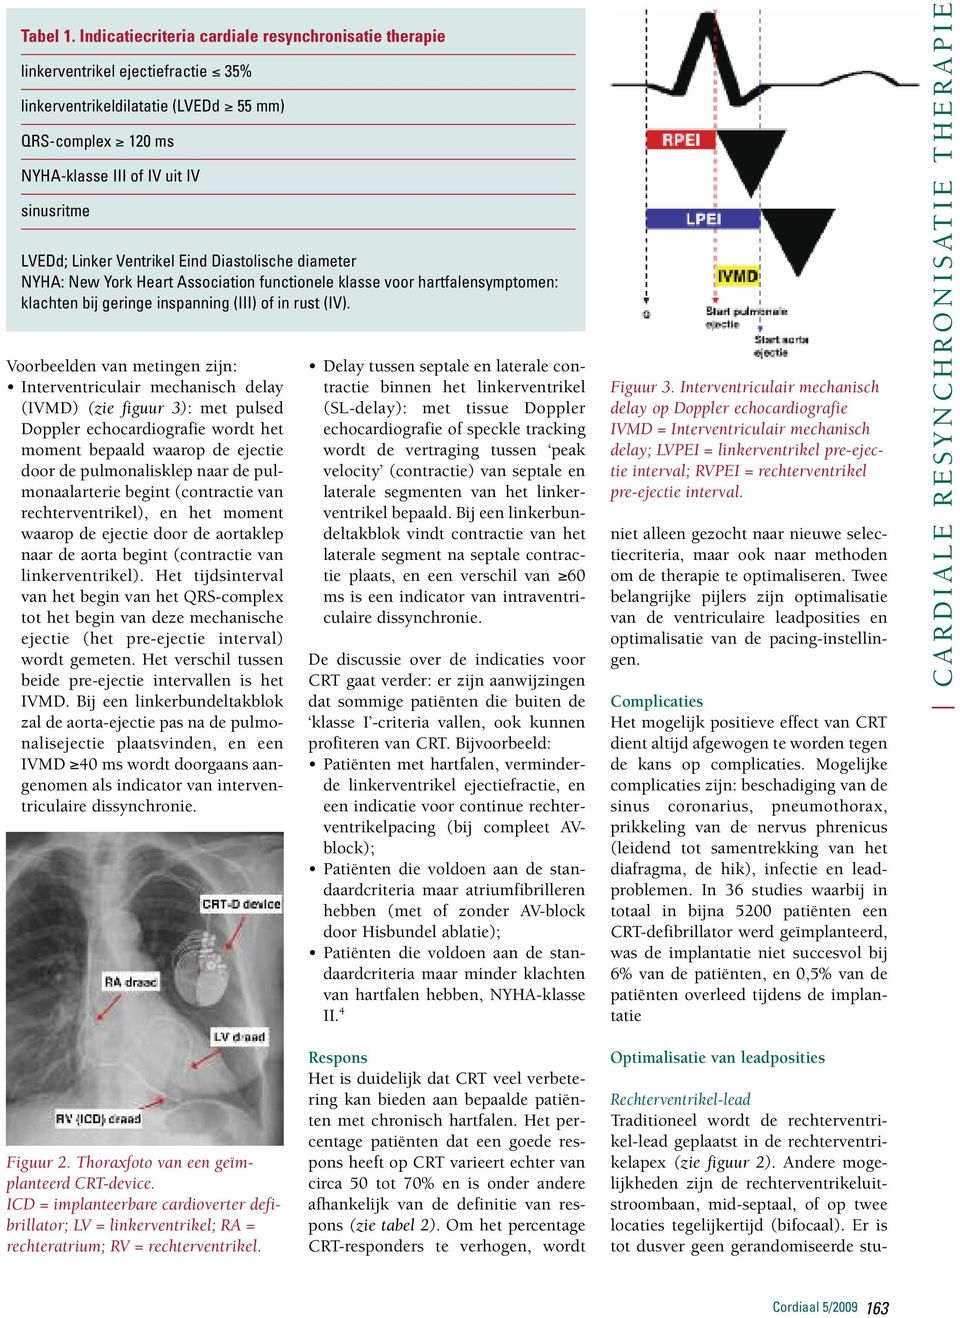 Ventrikel Eind Diastolische diameter NYHA: New York Heart Association functionele klasse voor hartfalensymptomen: klachten bij geringe inspanning (III) of in rust (IV).